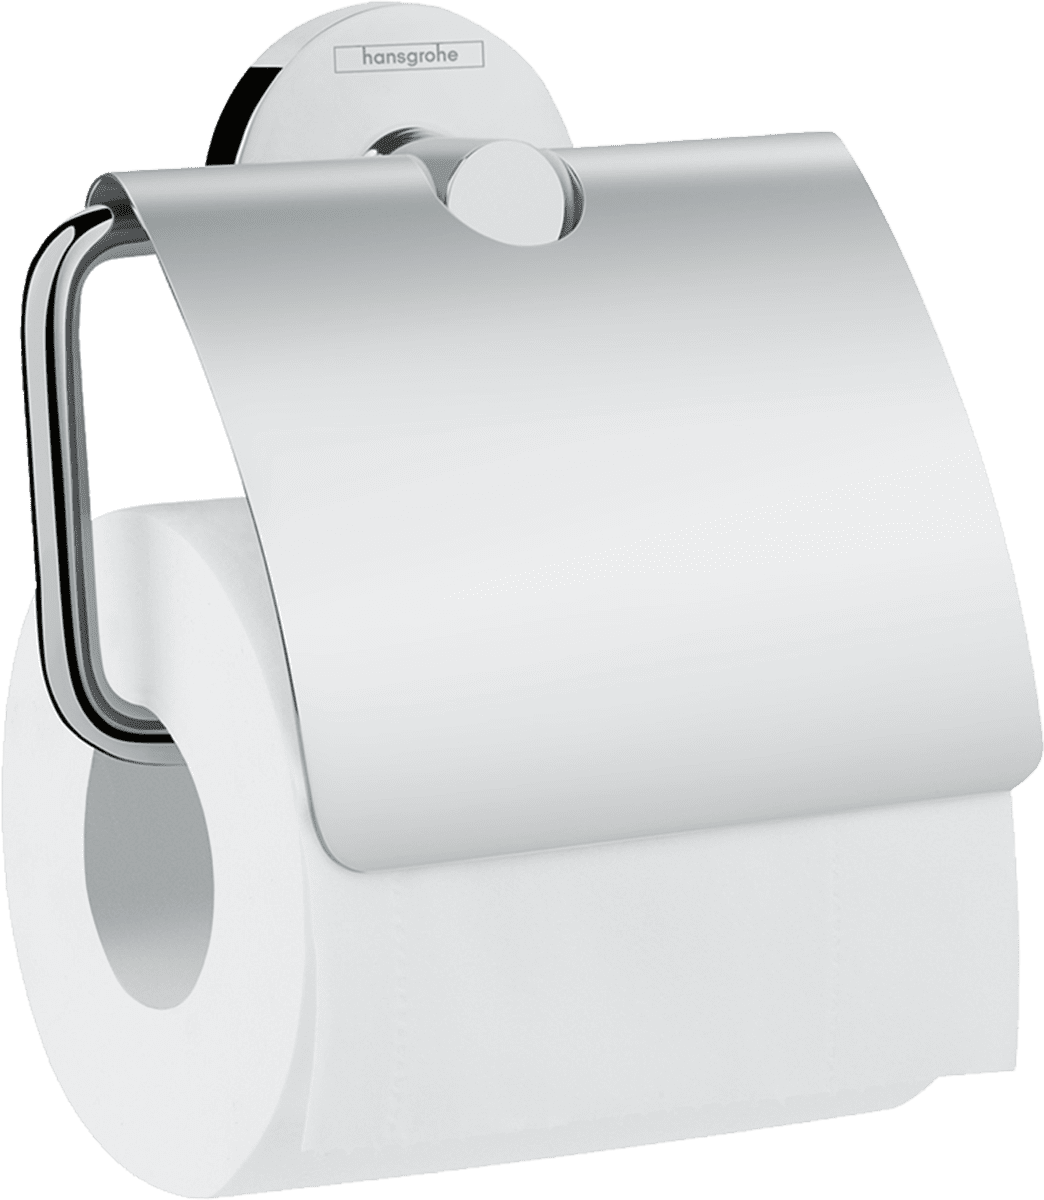 εικόνα του HANSGROHE Logis Universal Toilet paper holder with cover #41723000 - Chrome